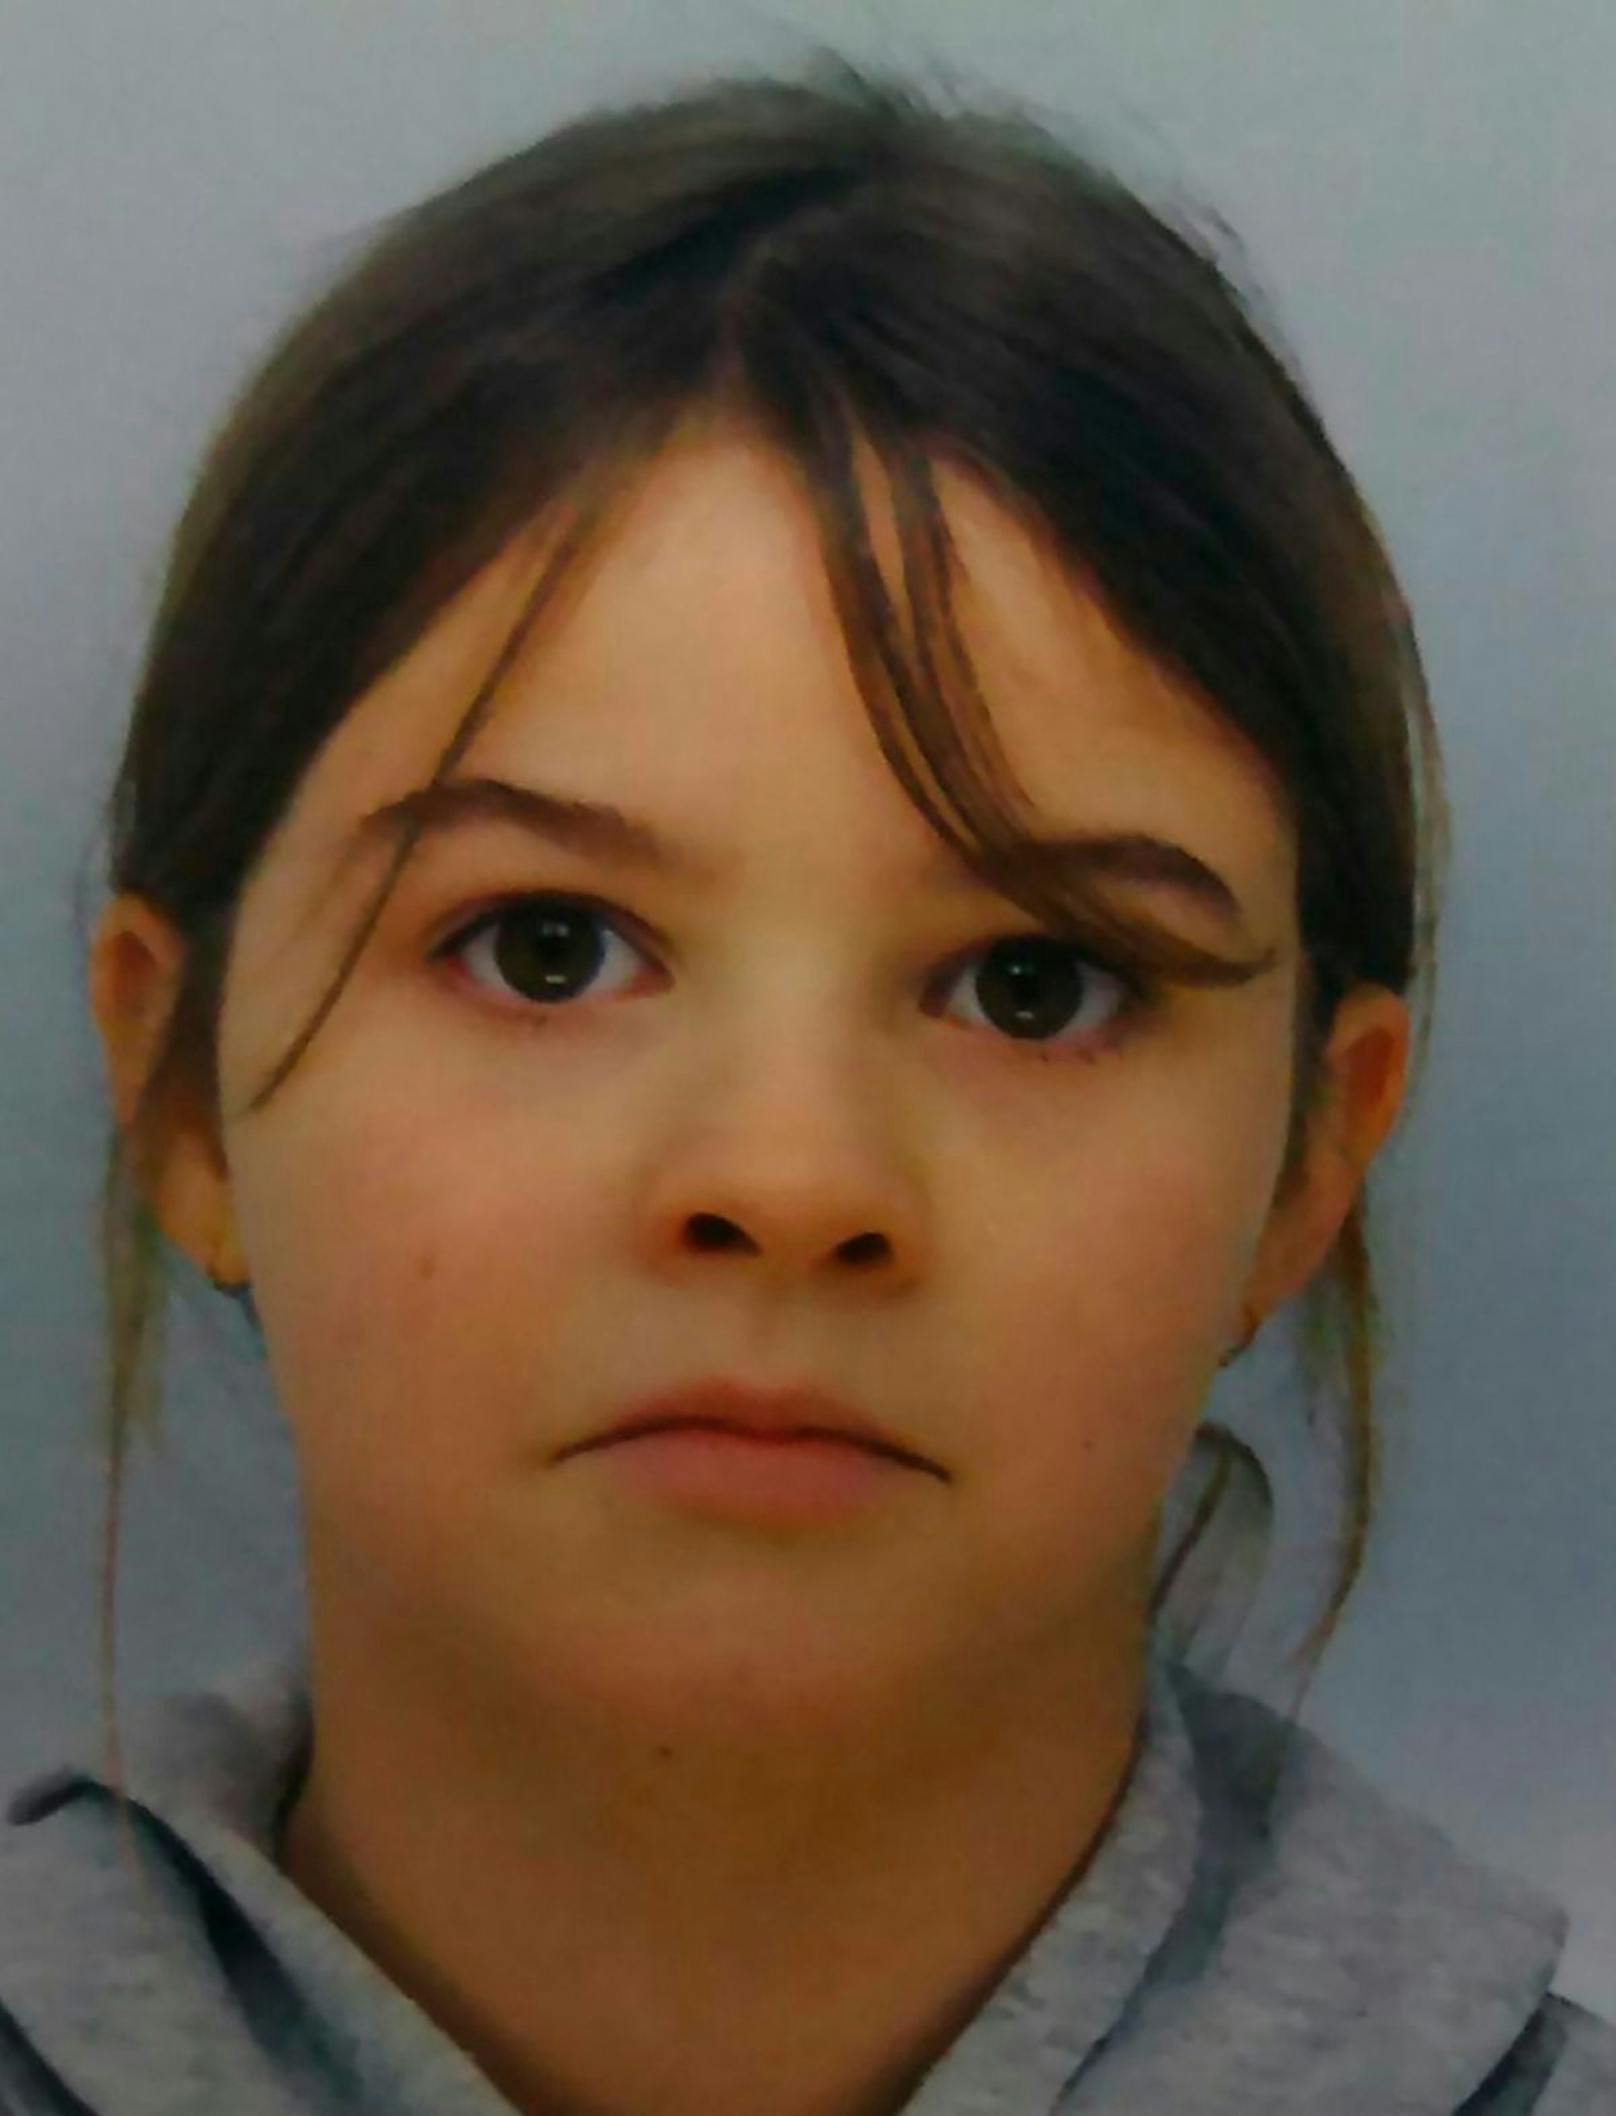 Die 8-jährige Mia Montemaggi wird vermisst.